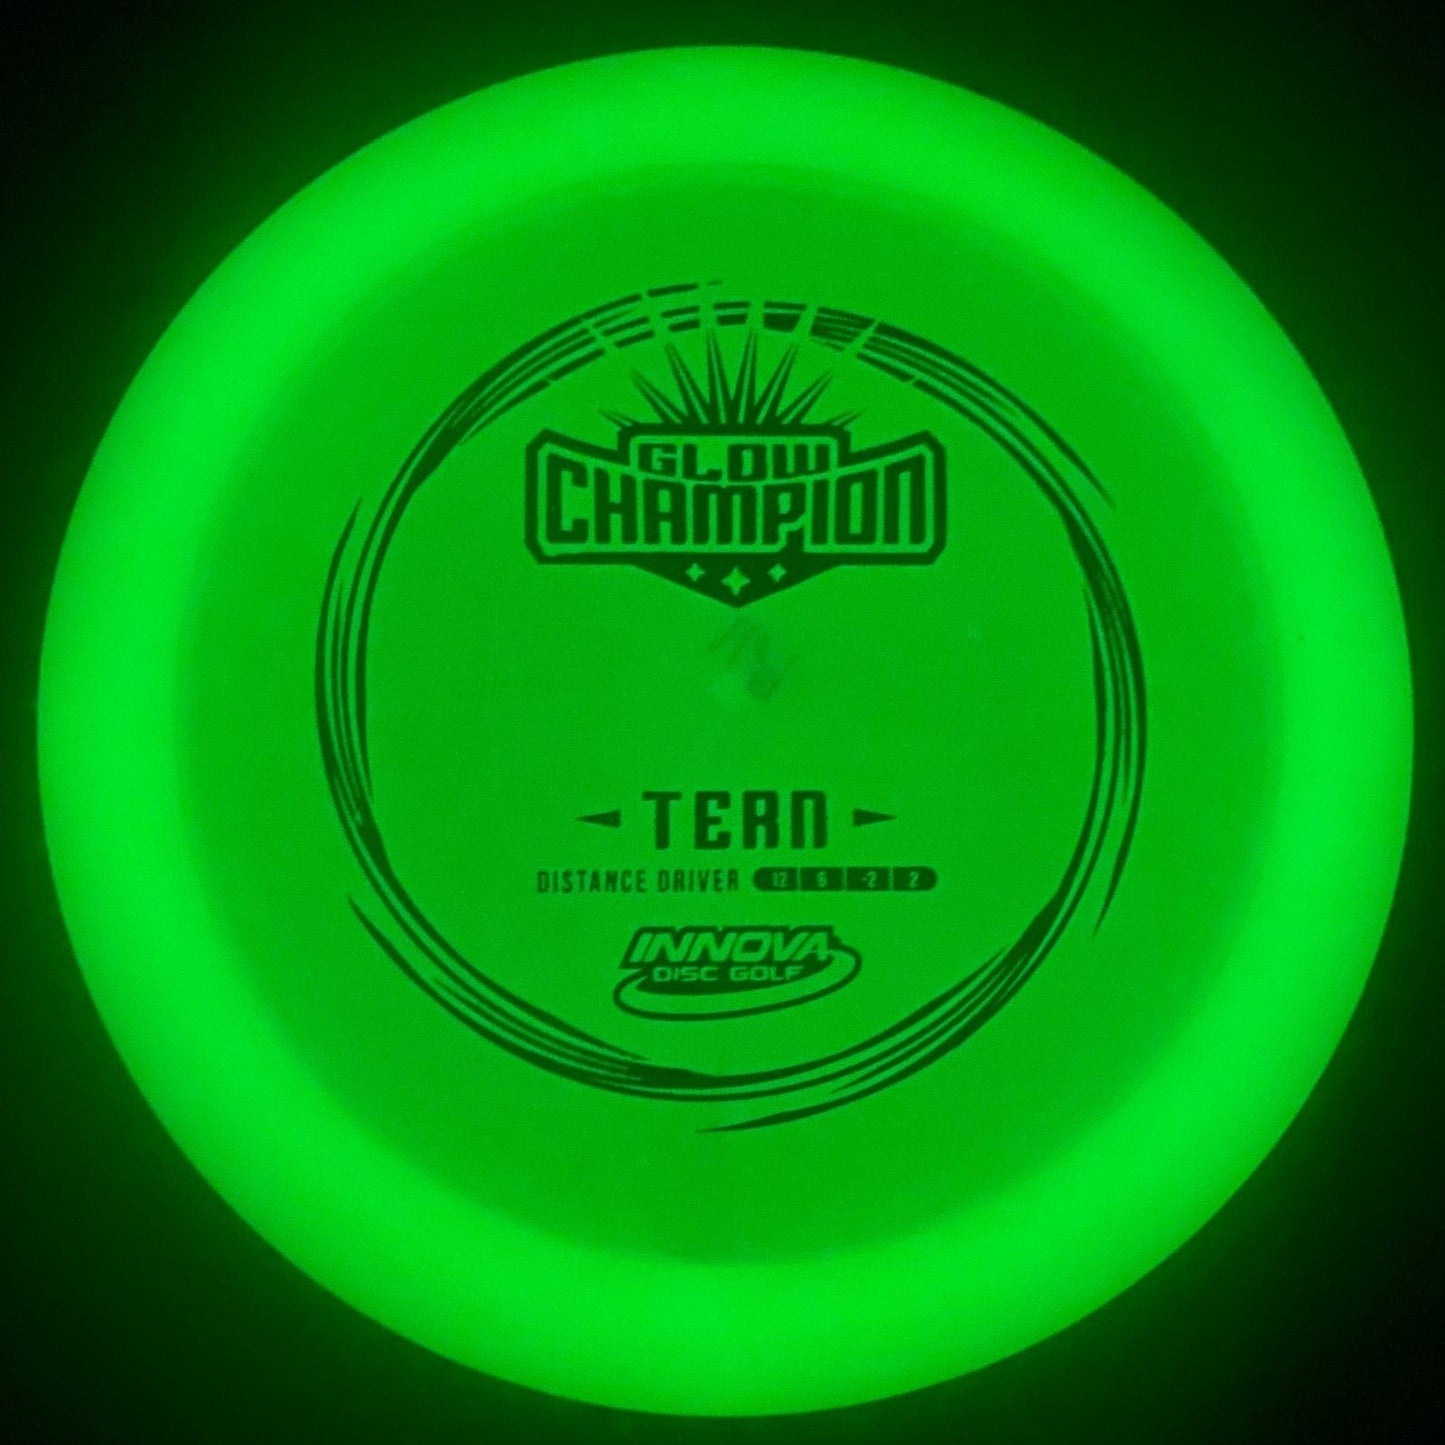 Champion Glow Tern Innova